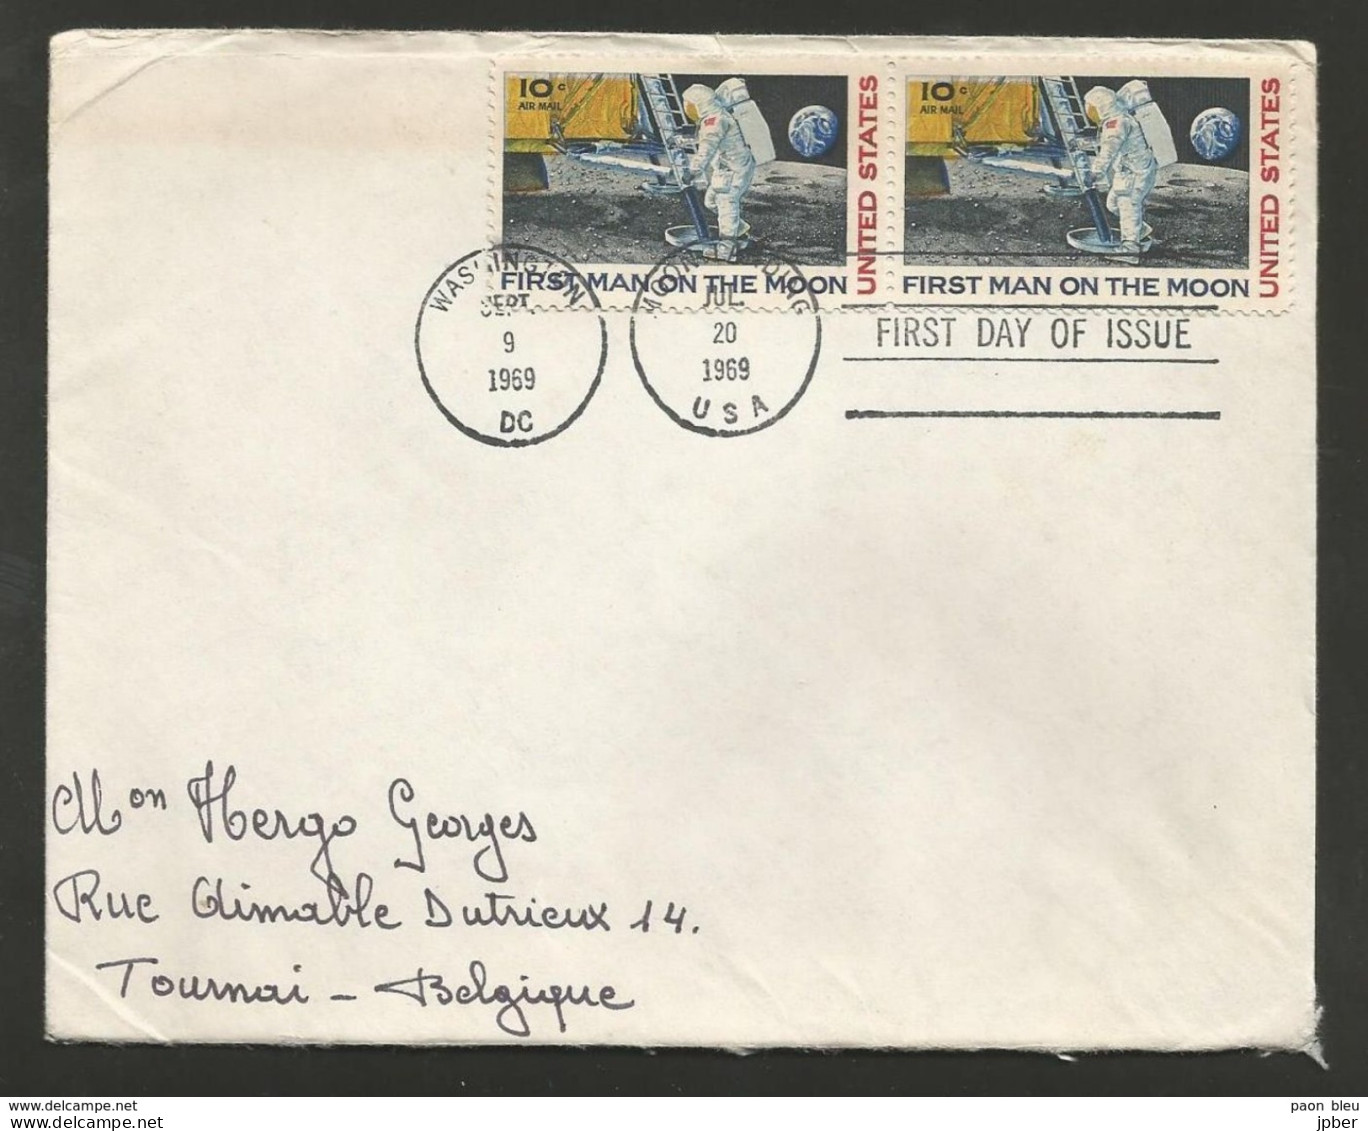 Etats-Unis - Lettre Du 20/7/69 - 1er Pas Sur La Lune - First Man On The Moon - Souvenirkaarten